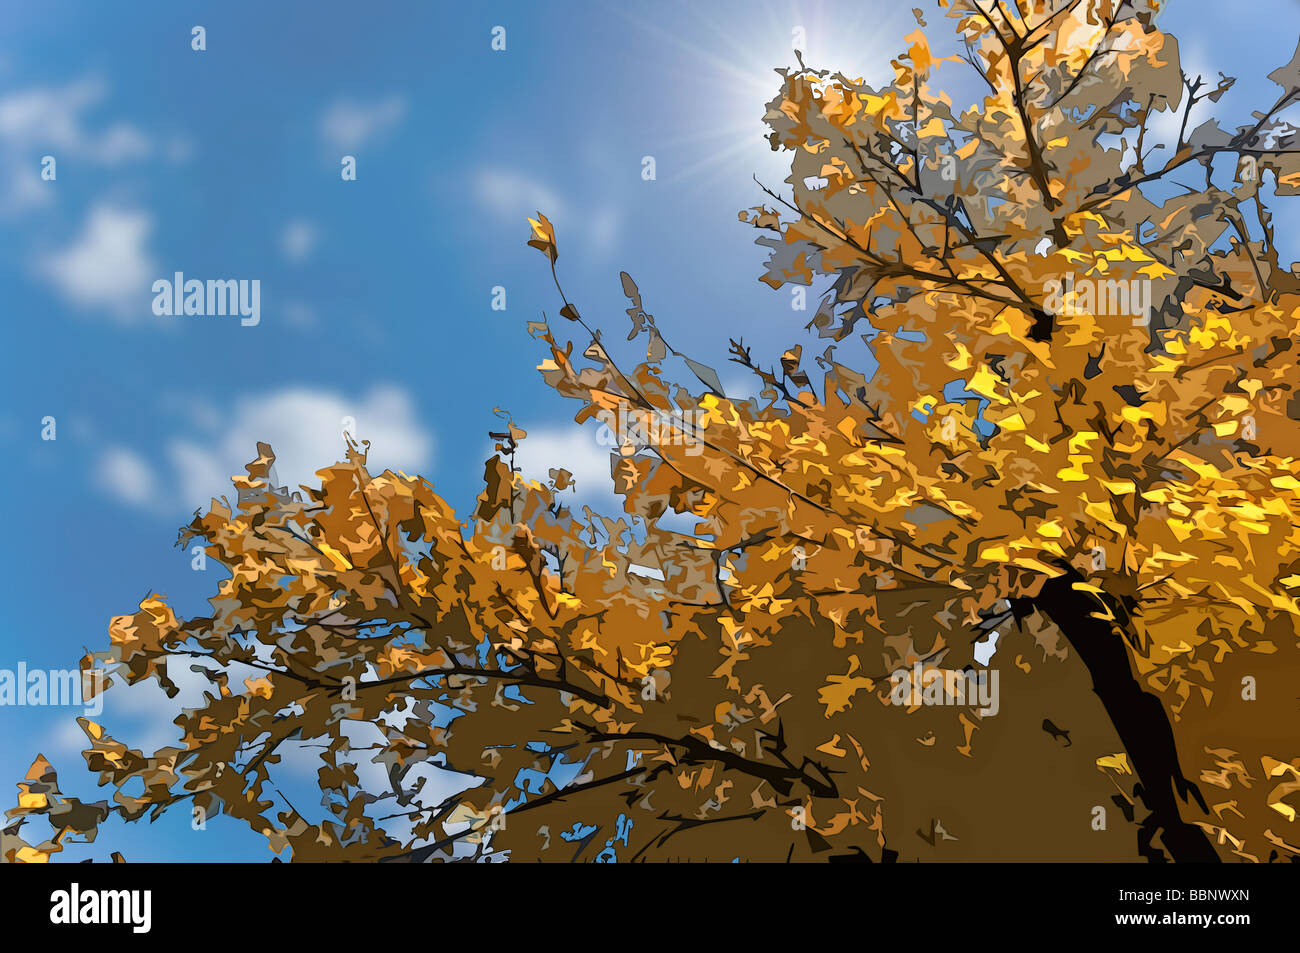 Cel-illustration de l'arbre d'automne Banque D'Images